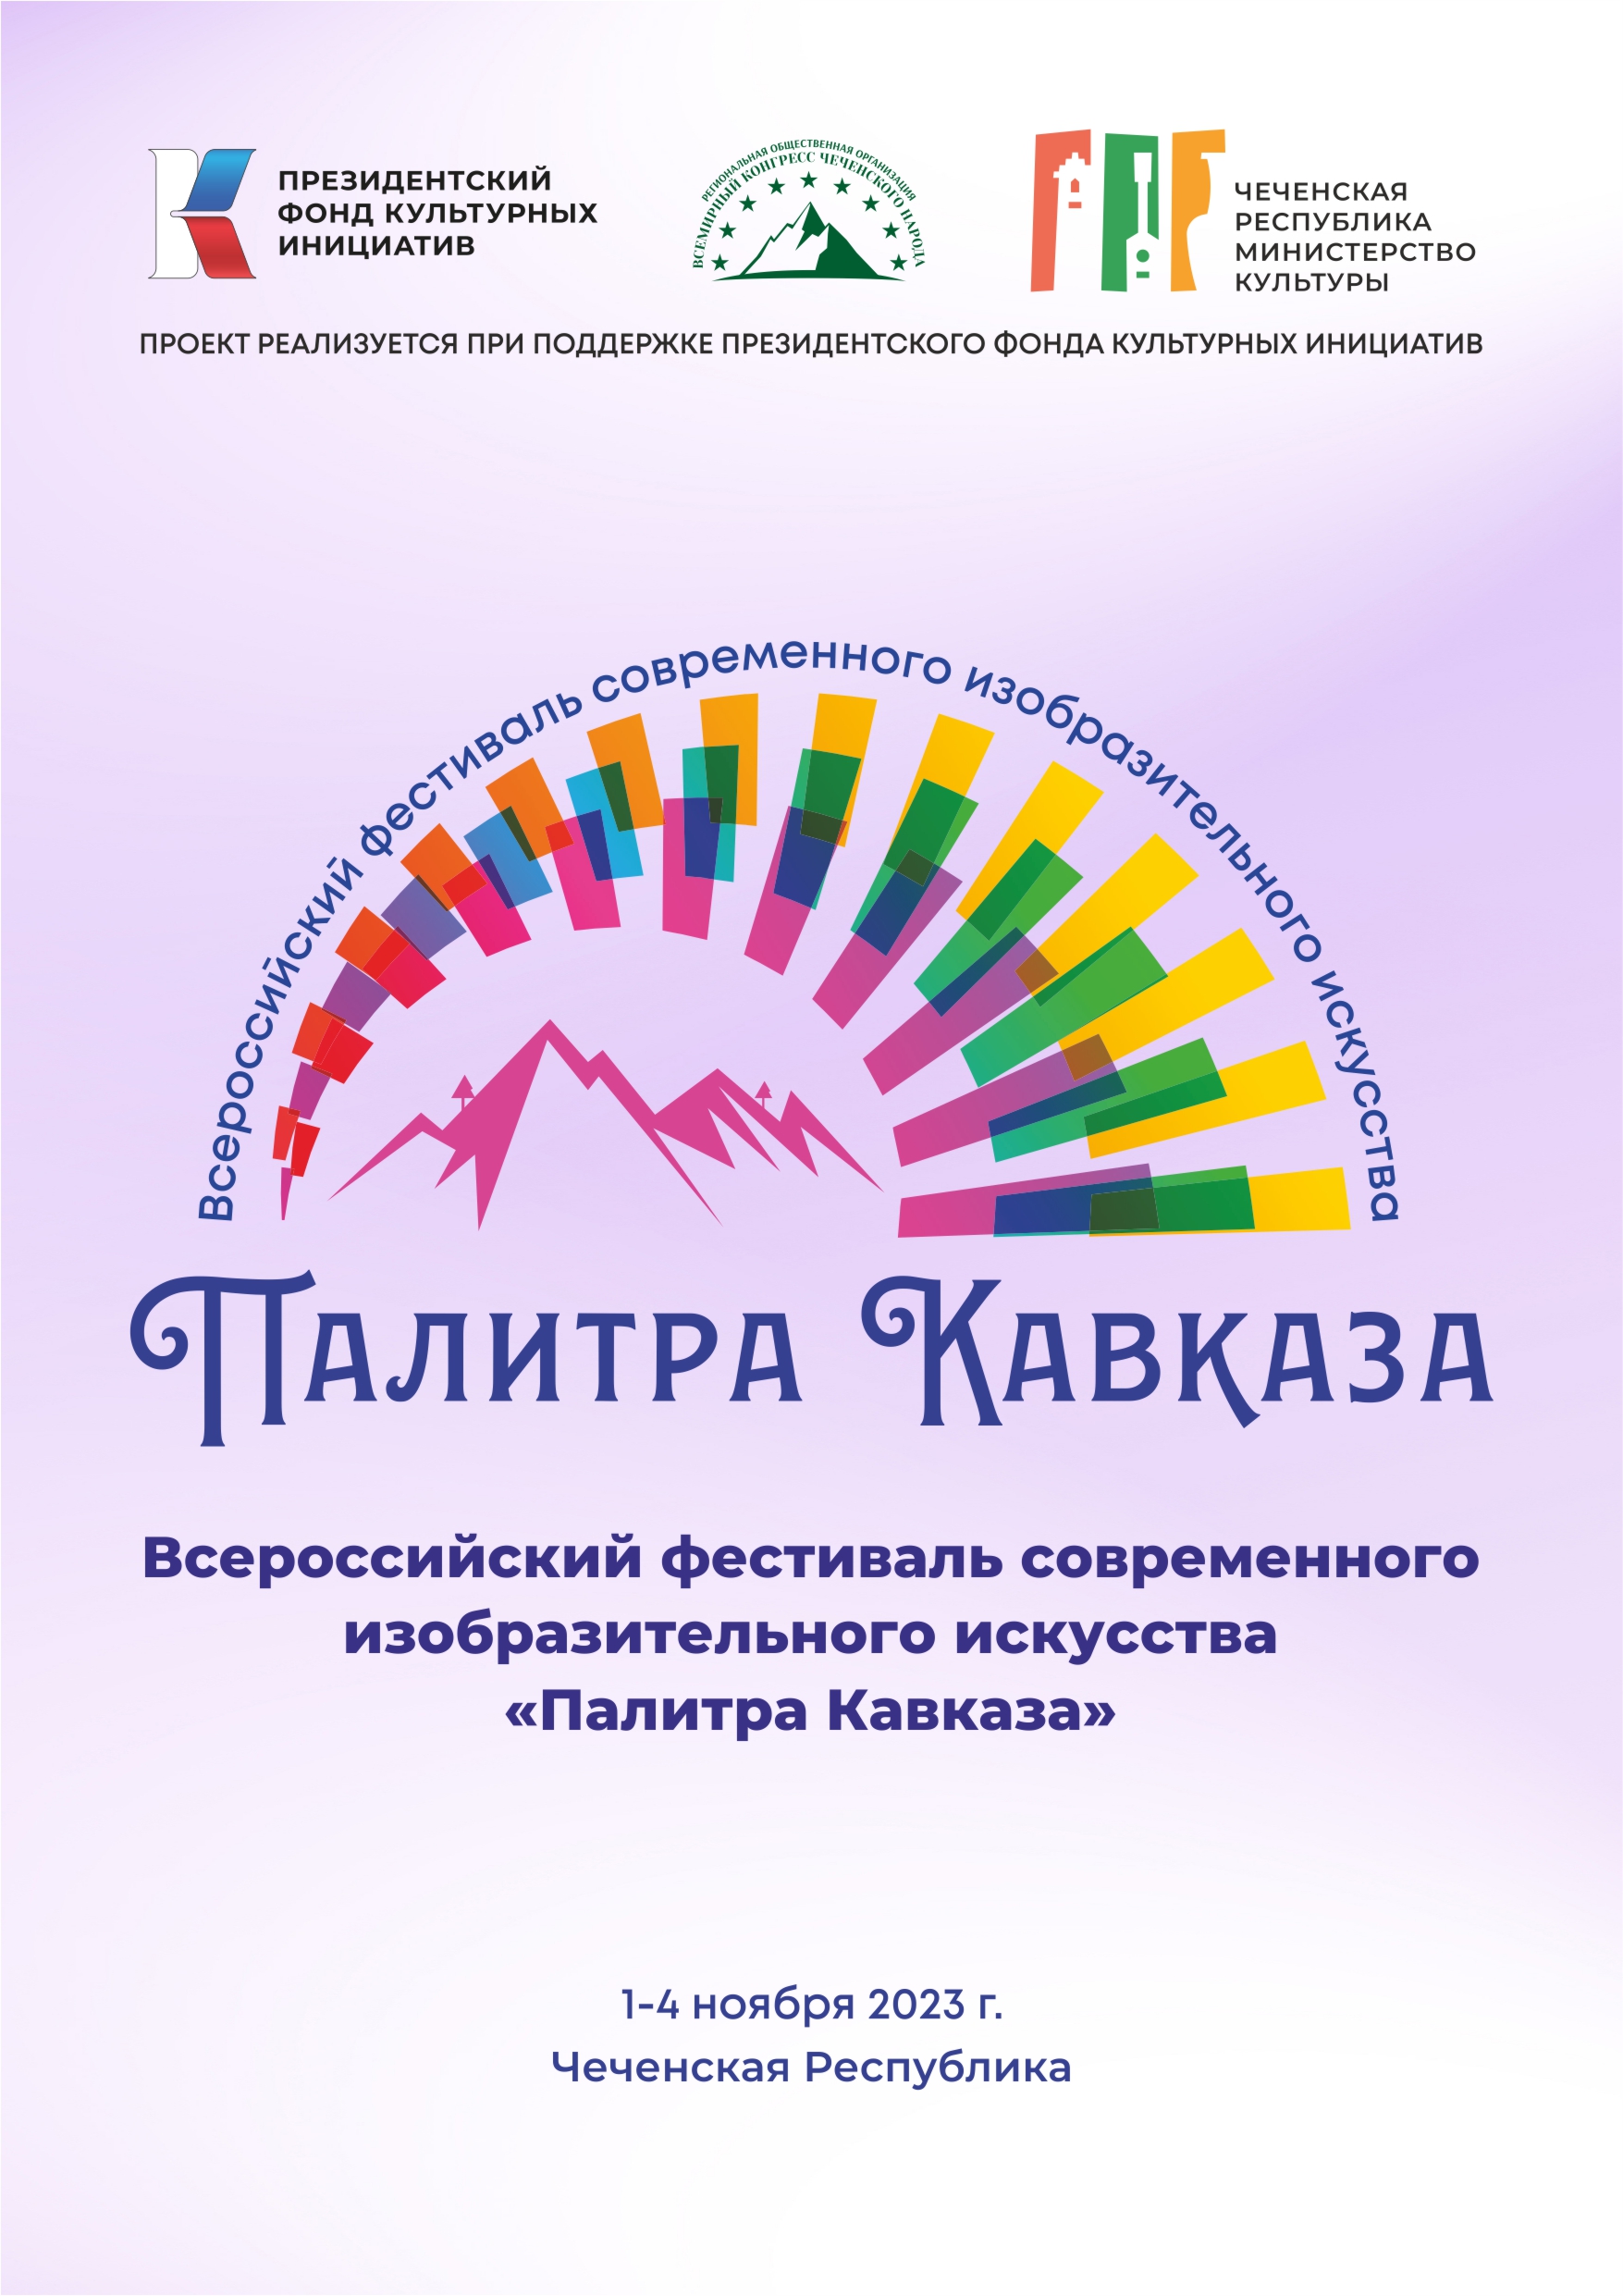 Всероссийский фестиваль современного изобразительного искусства «Палитра Кавказа»